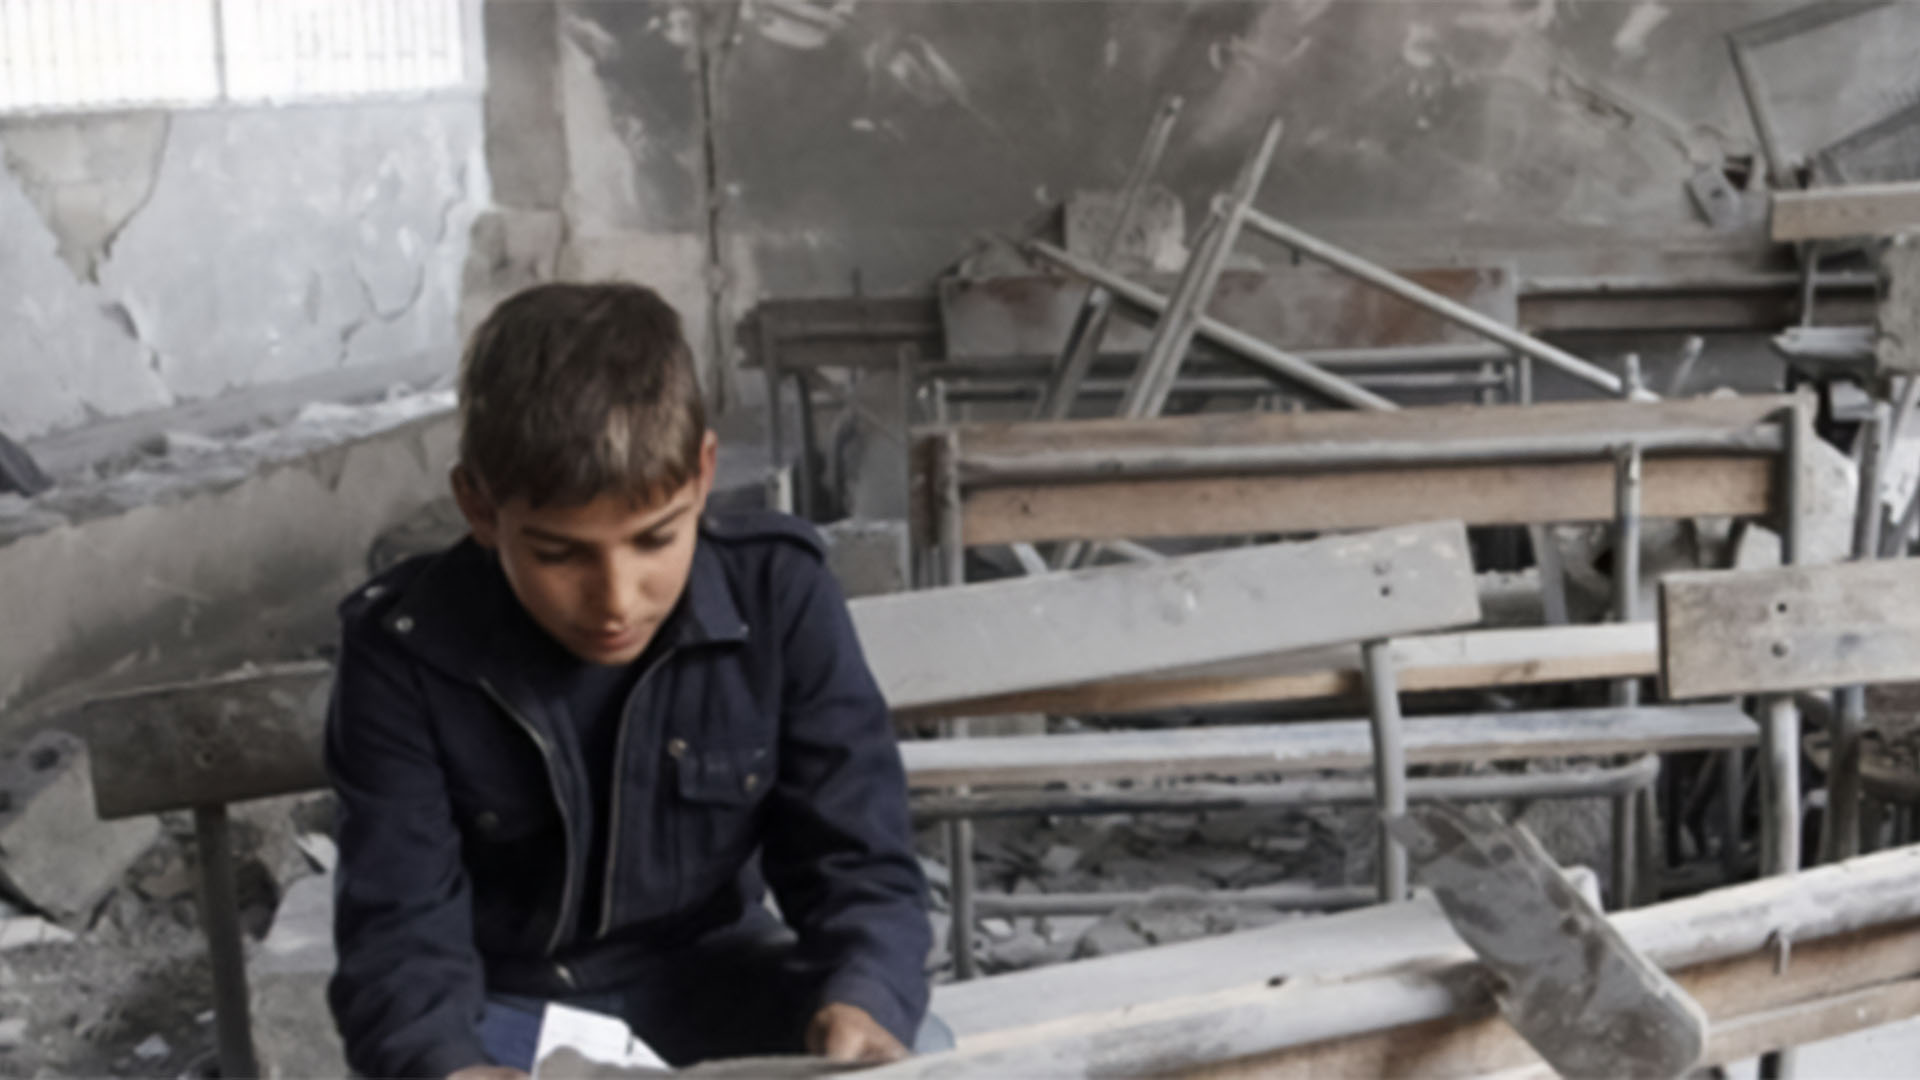 واقع التعليم في سوريا يشتد خطراً